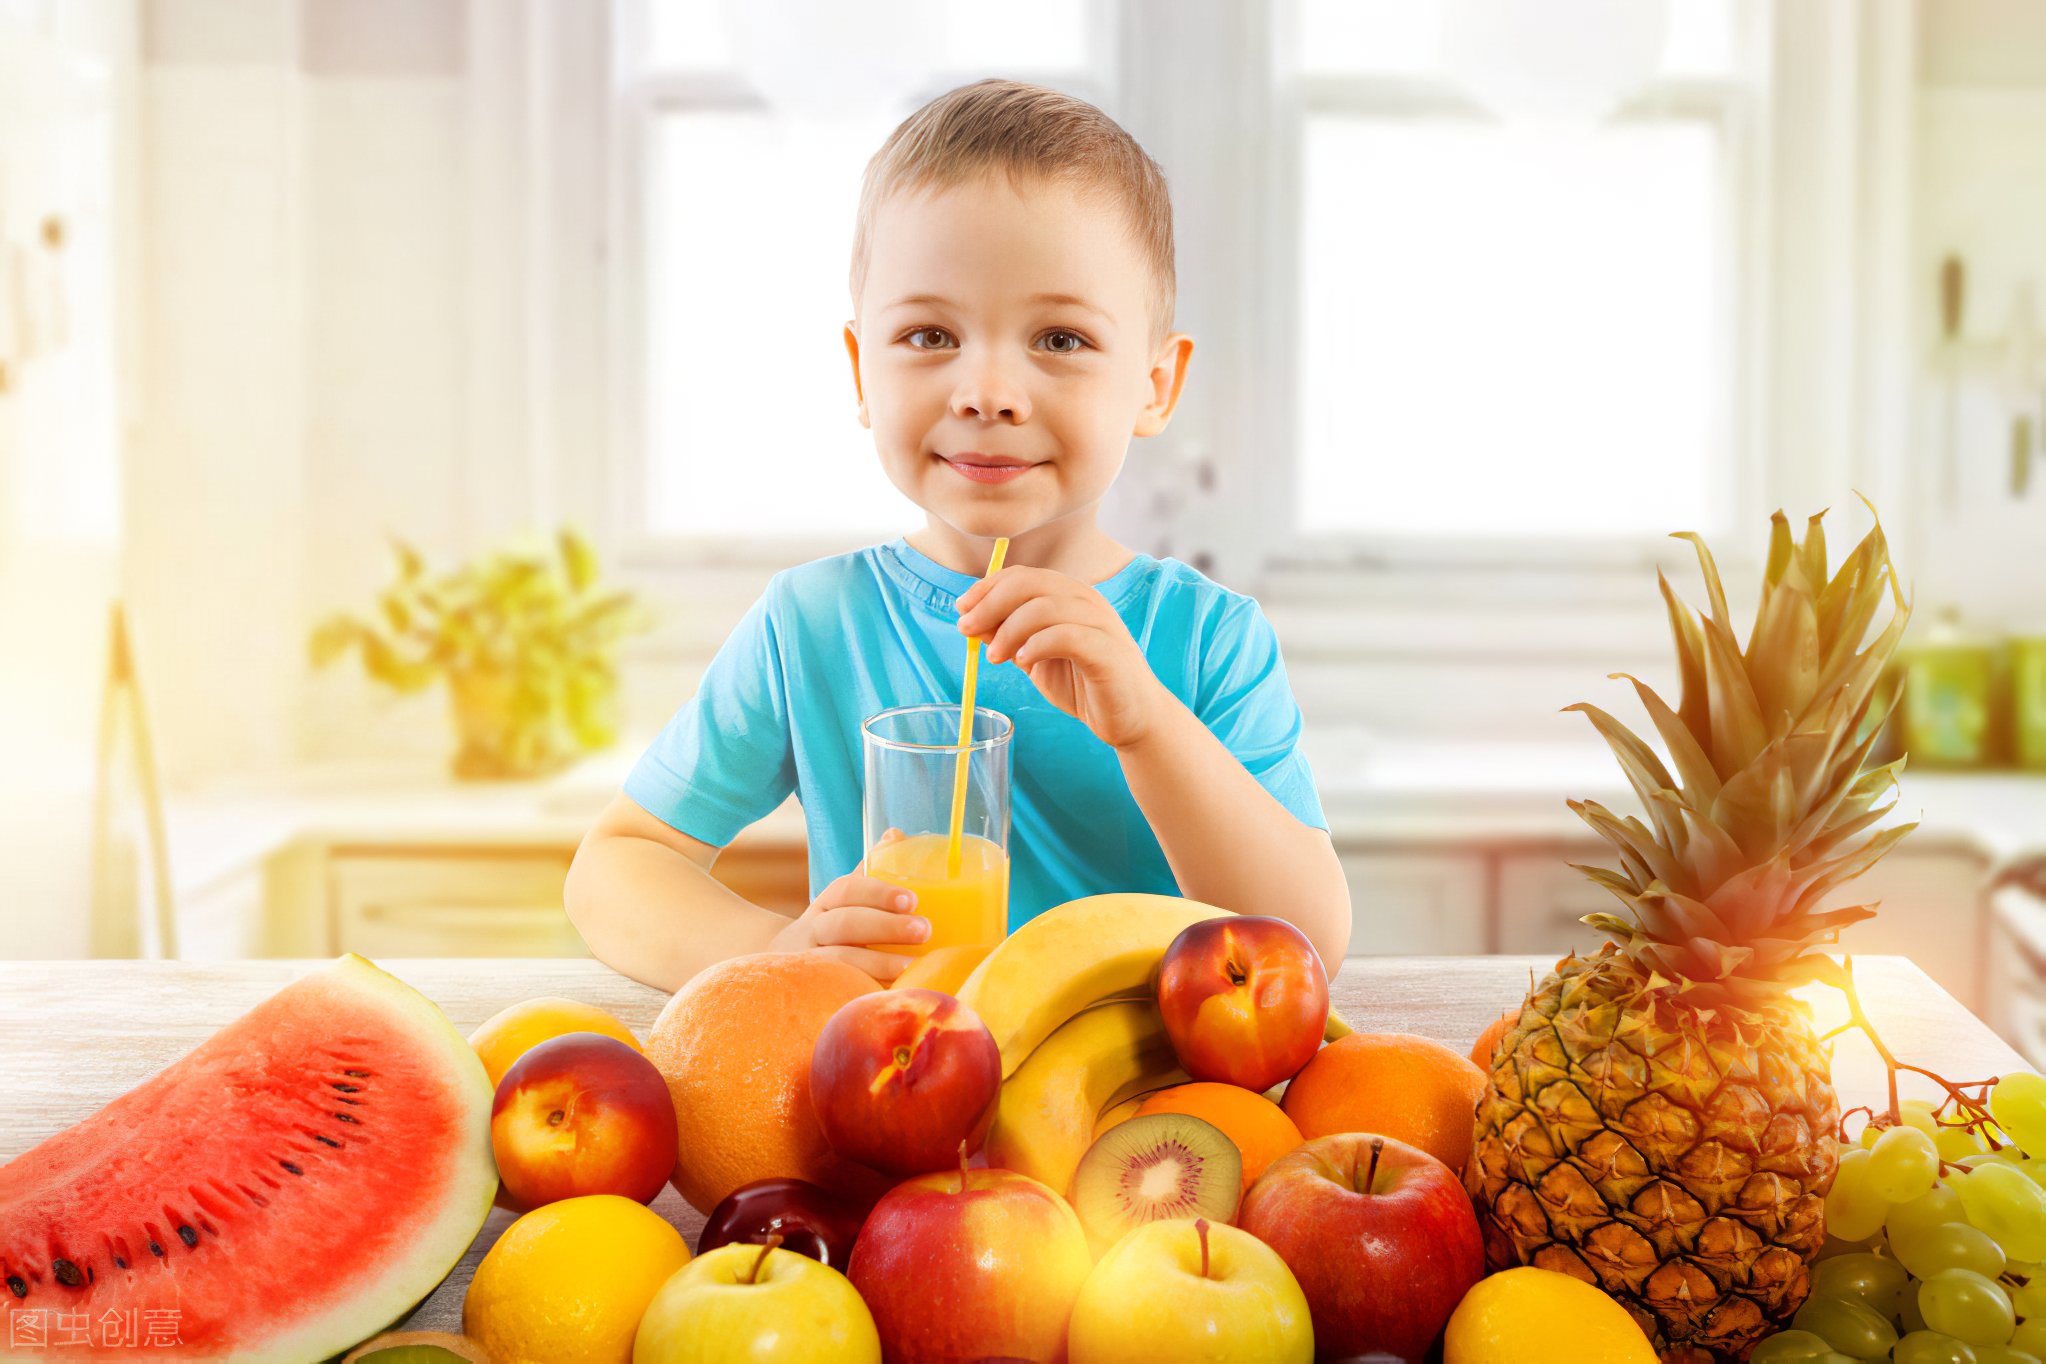 La importancia de la fruta en la alimentación infantil